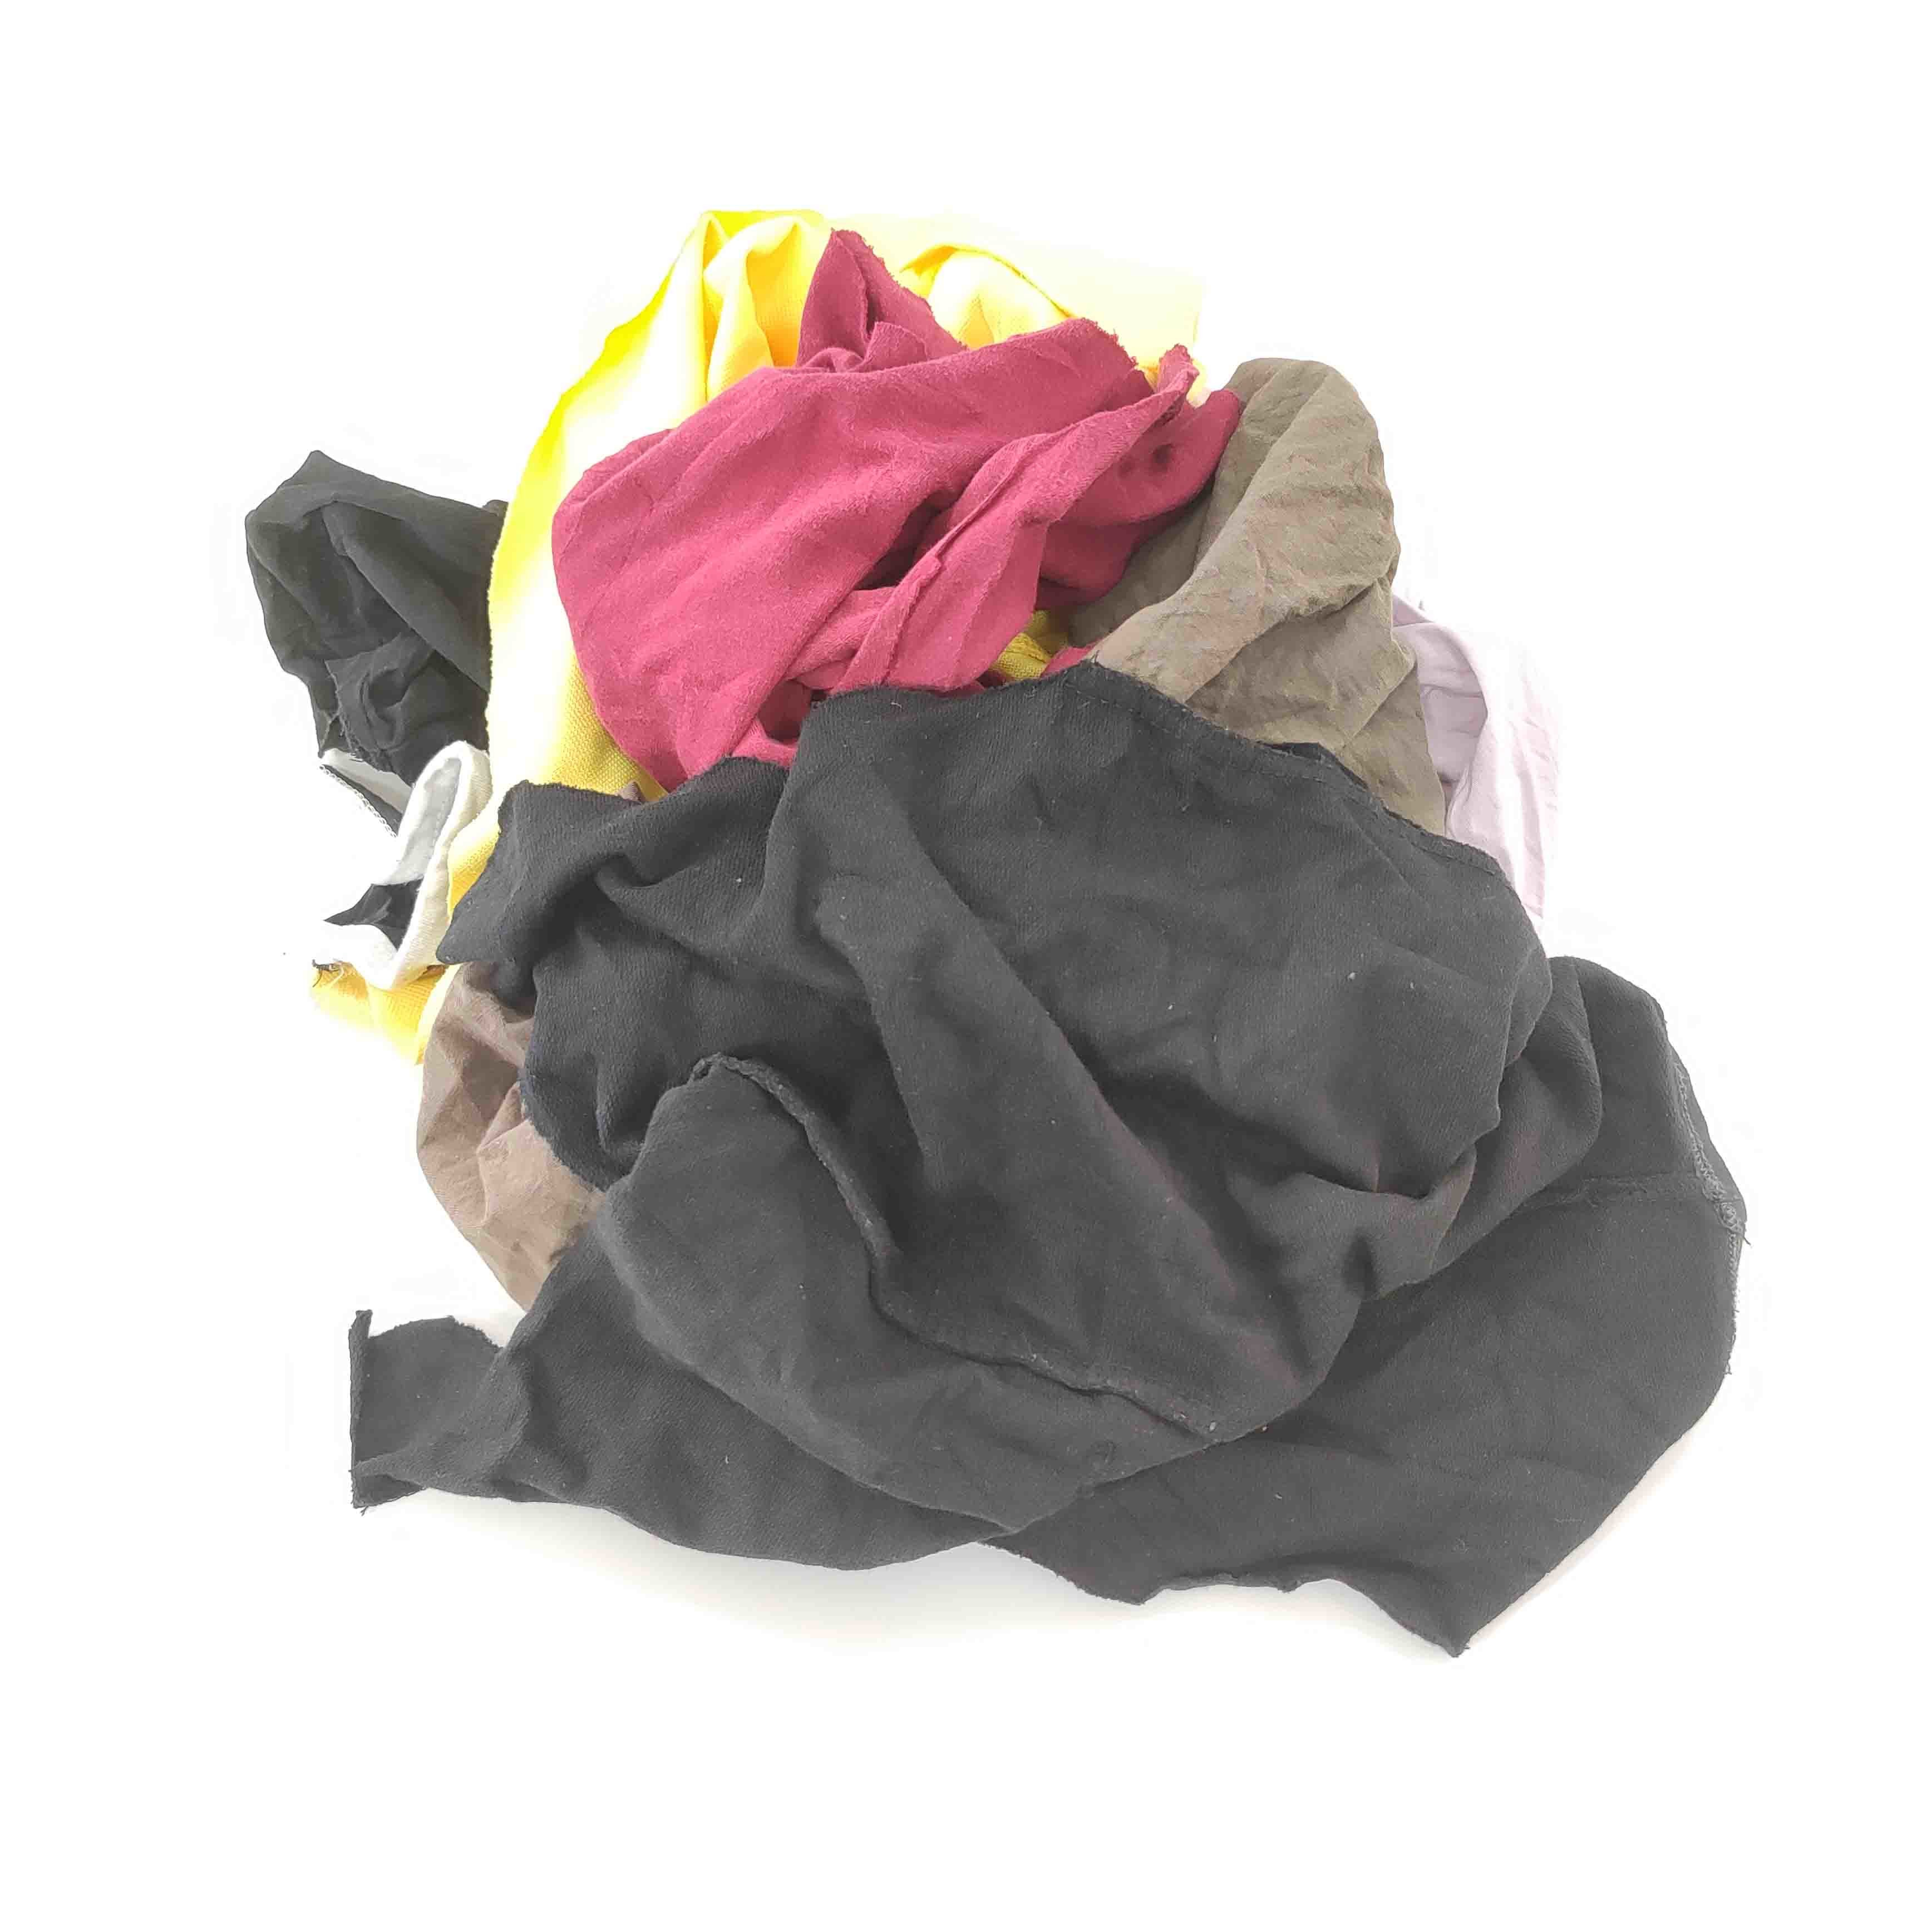 Excellent Adsorption  10kg/Bag 55cm Colored T Shirt Rags